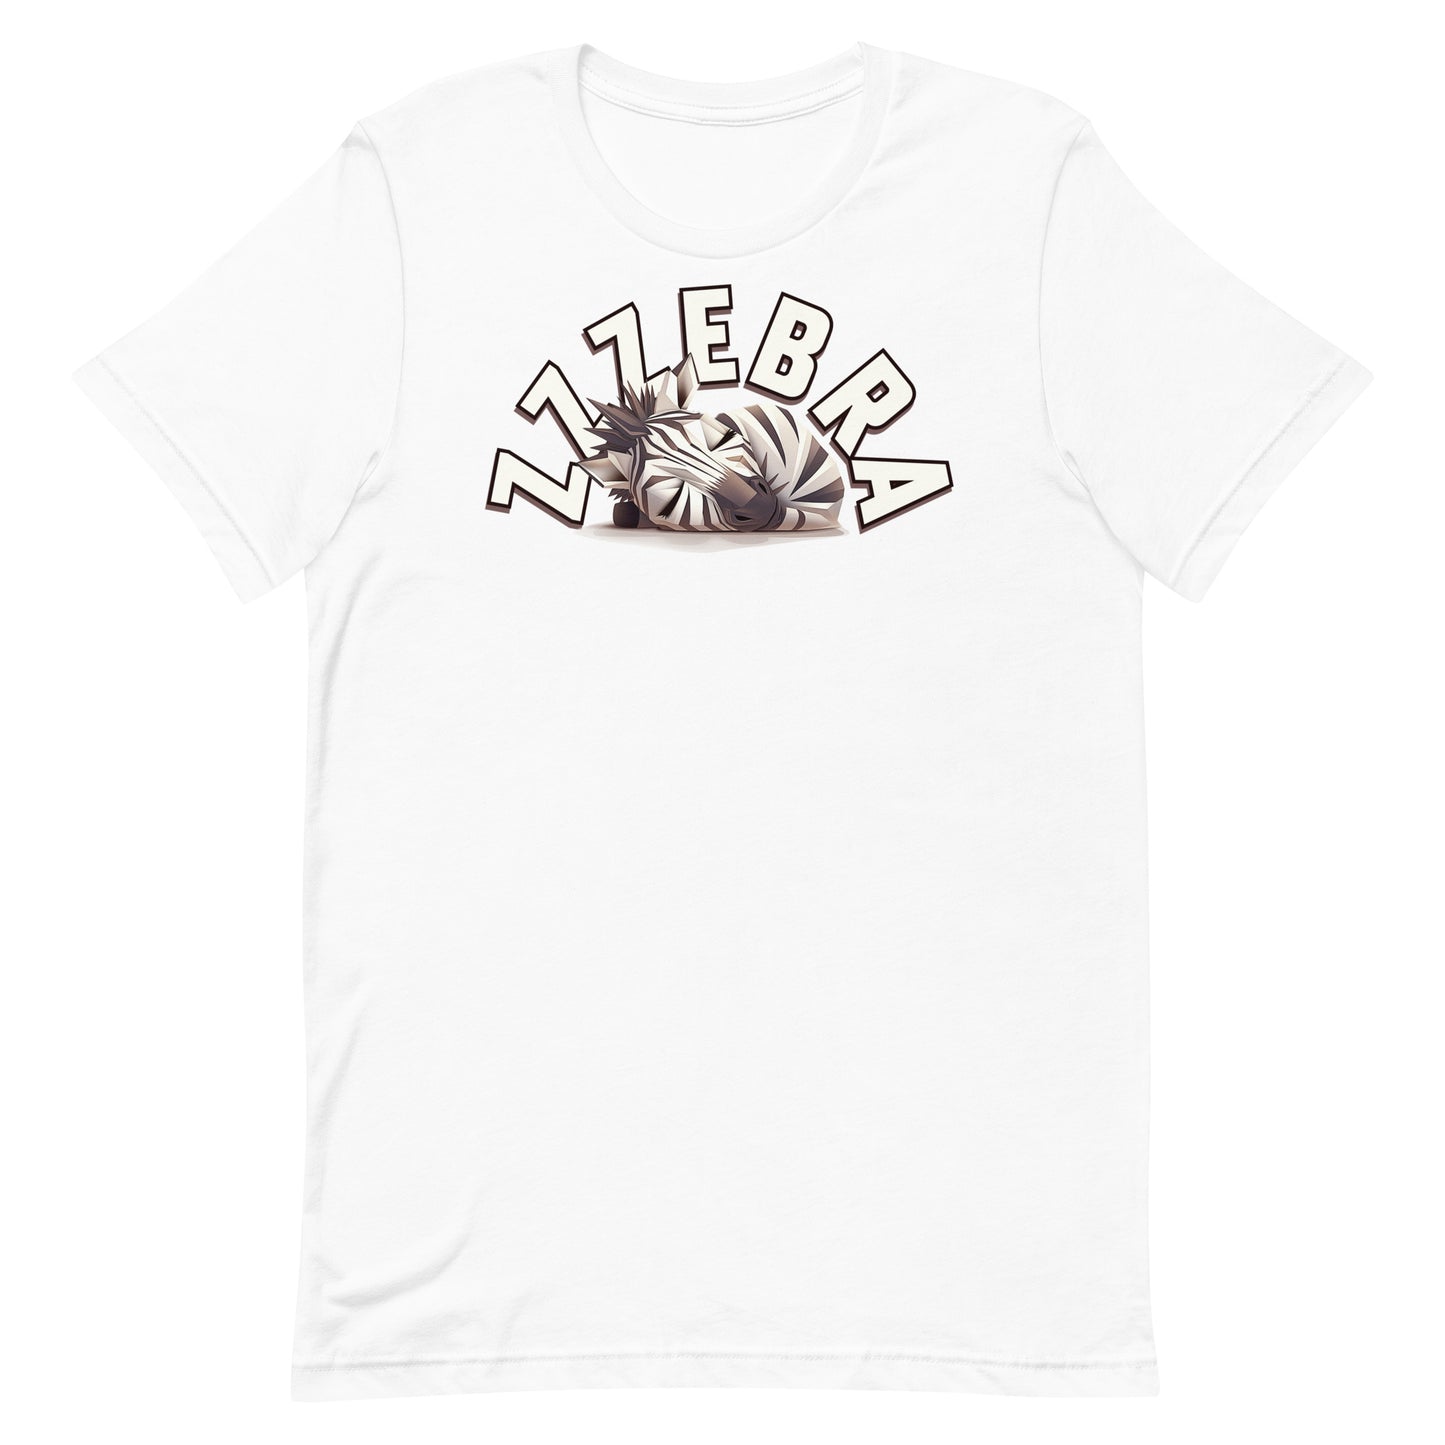 Zzzebra-Snoring Zebra-Sleep-Animals-Cute-Graphic Tee Shirt-White